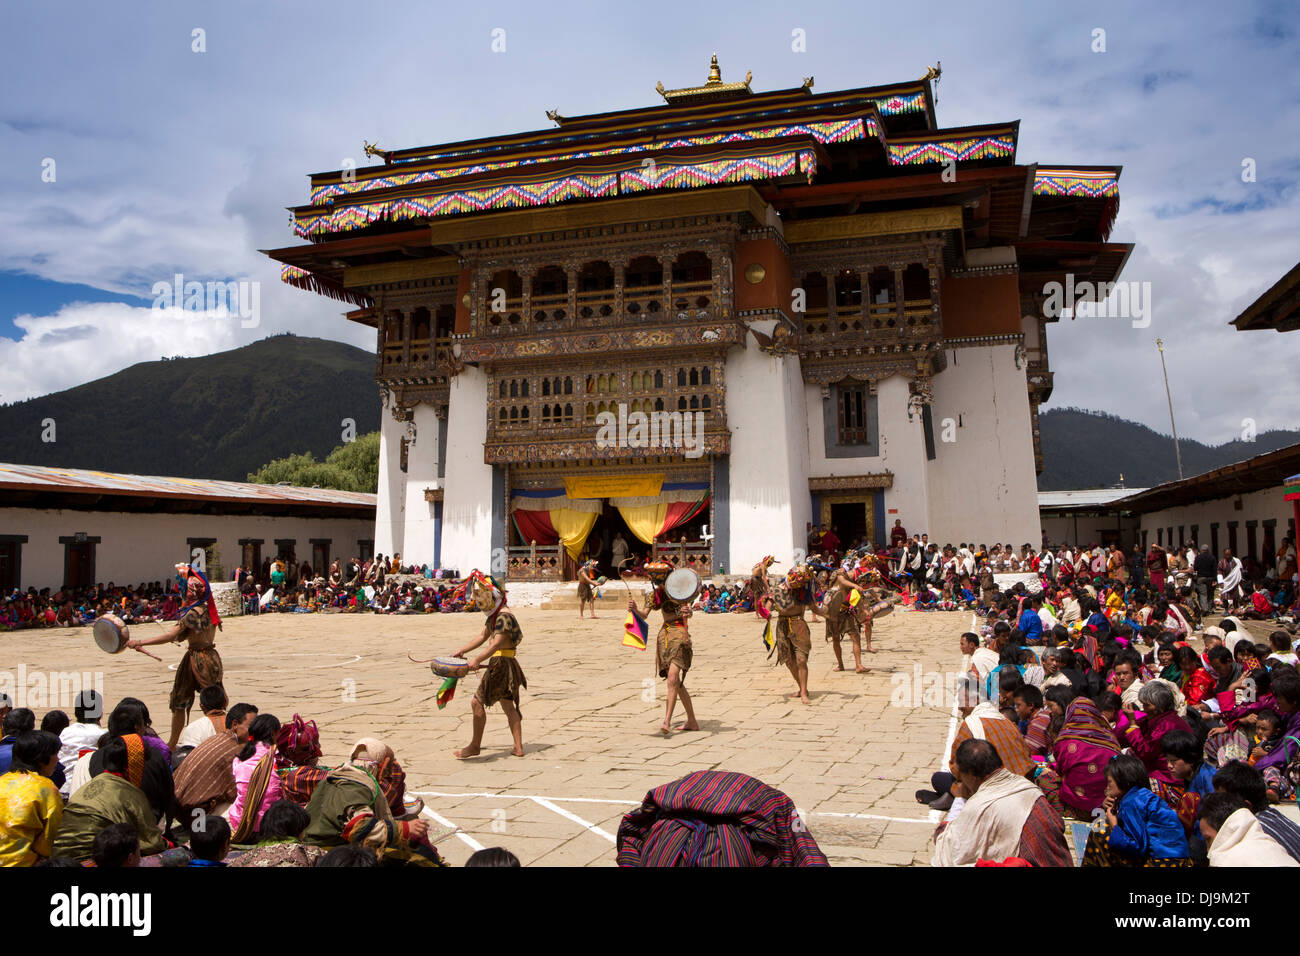 Le Bhoutan, Phobjika, Gangte Goemba Tsechu festival, danseurs dans cour intérieure Banque D'Images